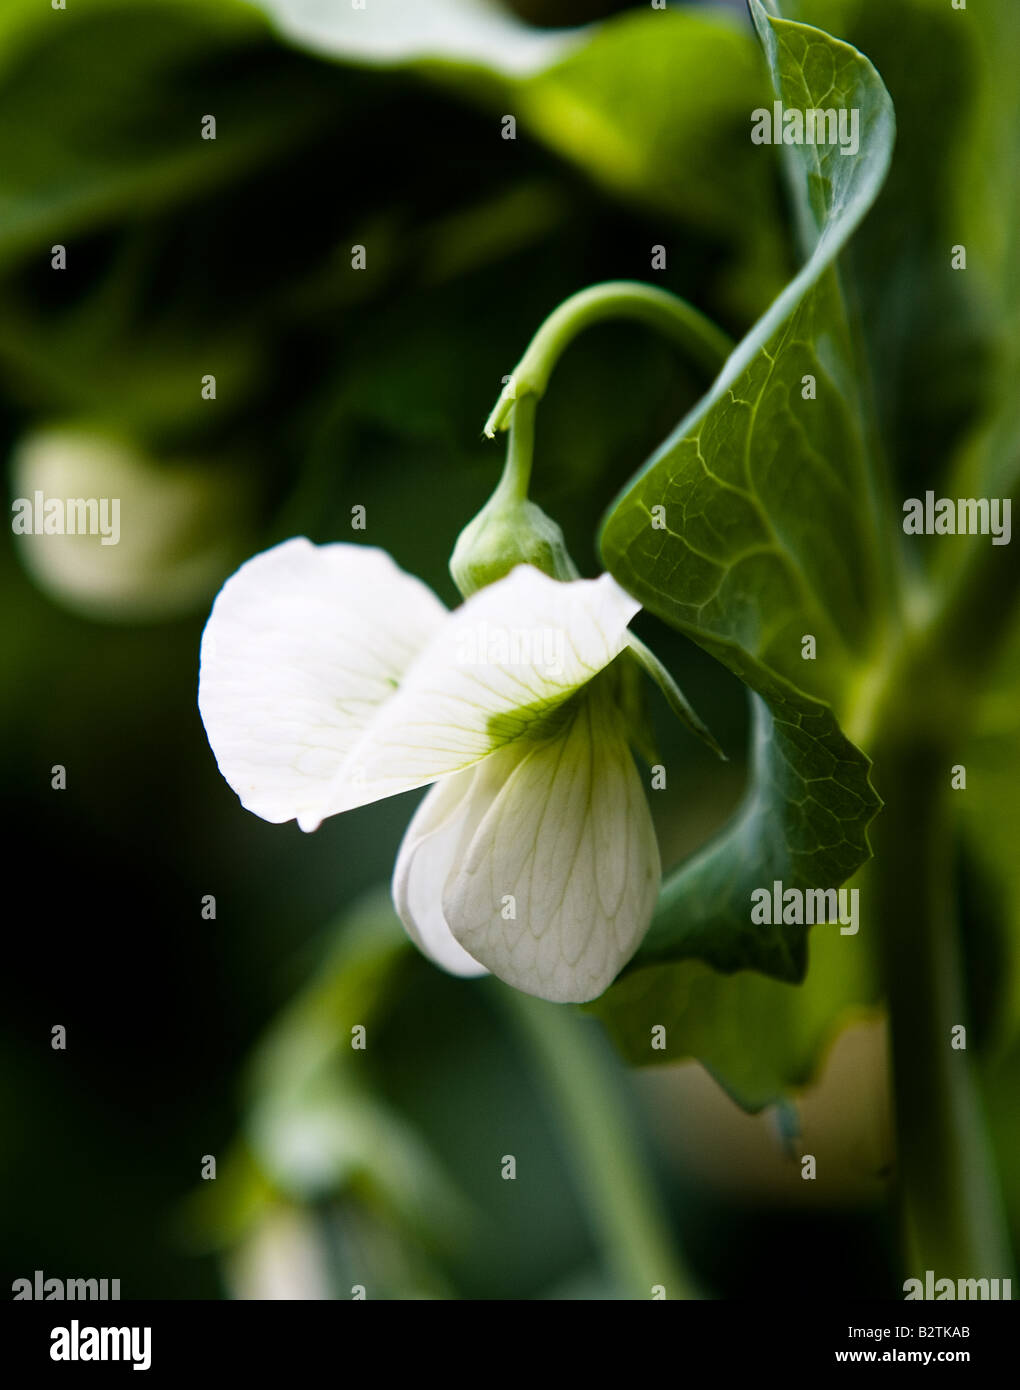 pisum sativum garden pea flower stock photos & pisum sativum garden